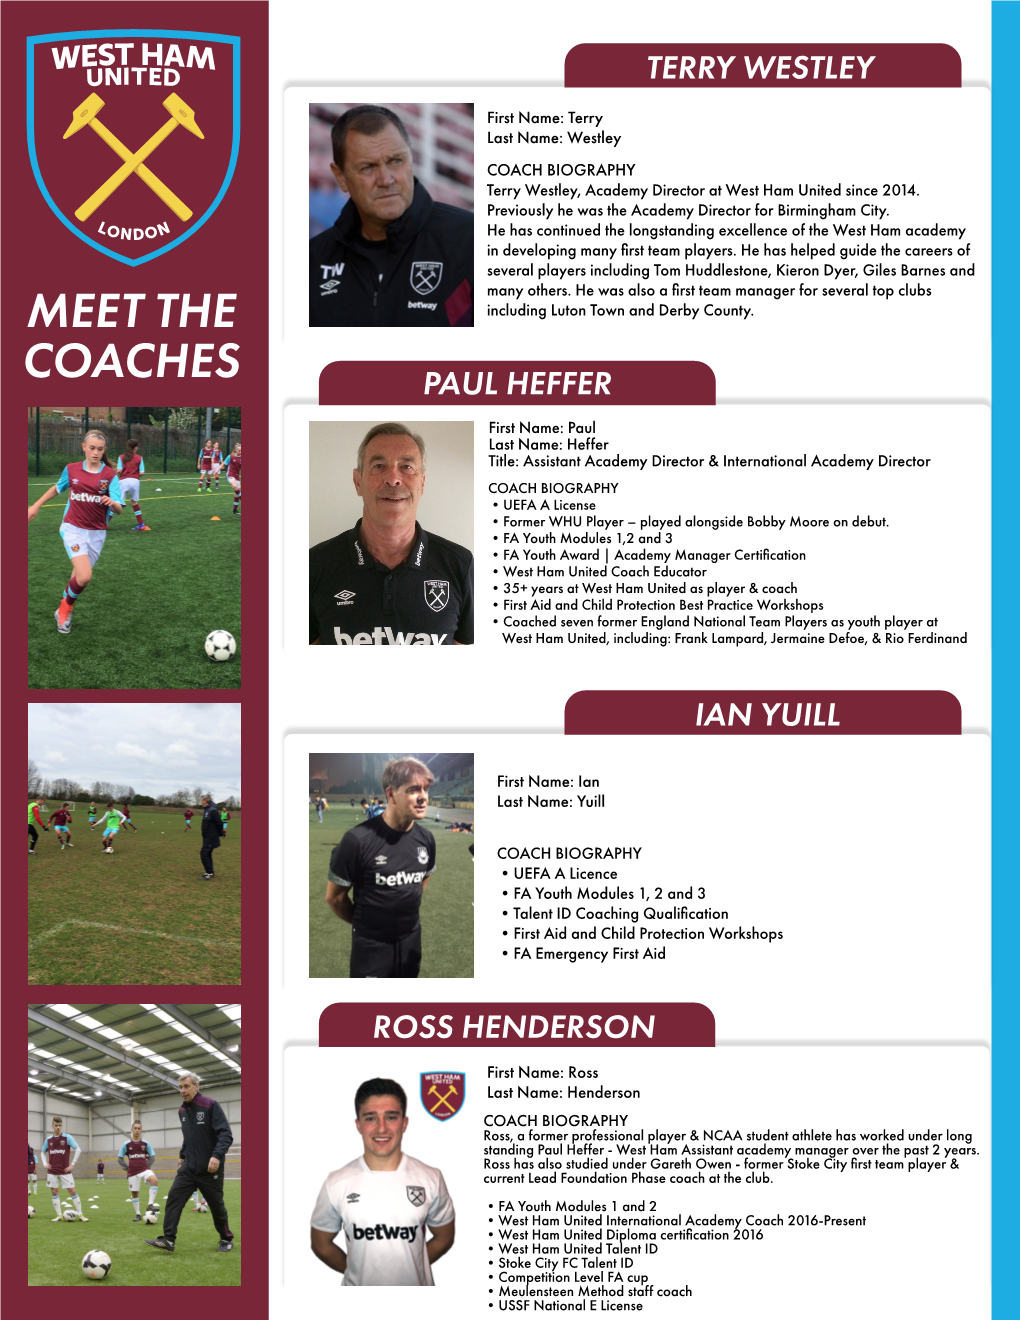 Meet the Coaches Ian Yuill